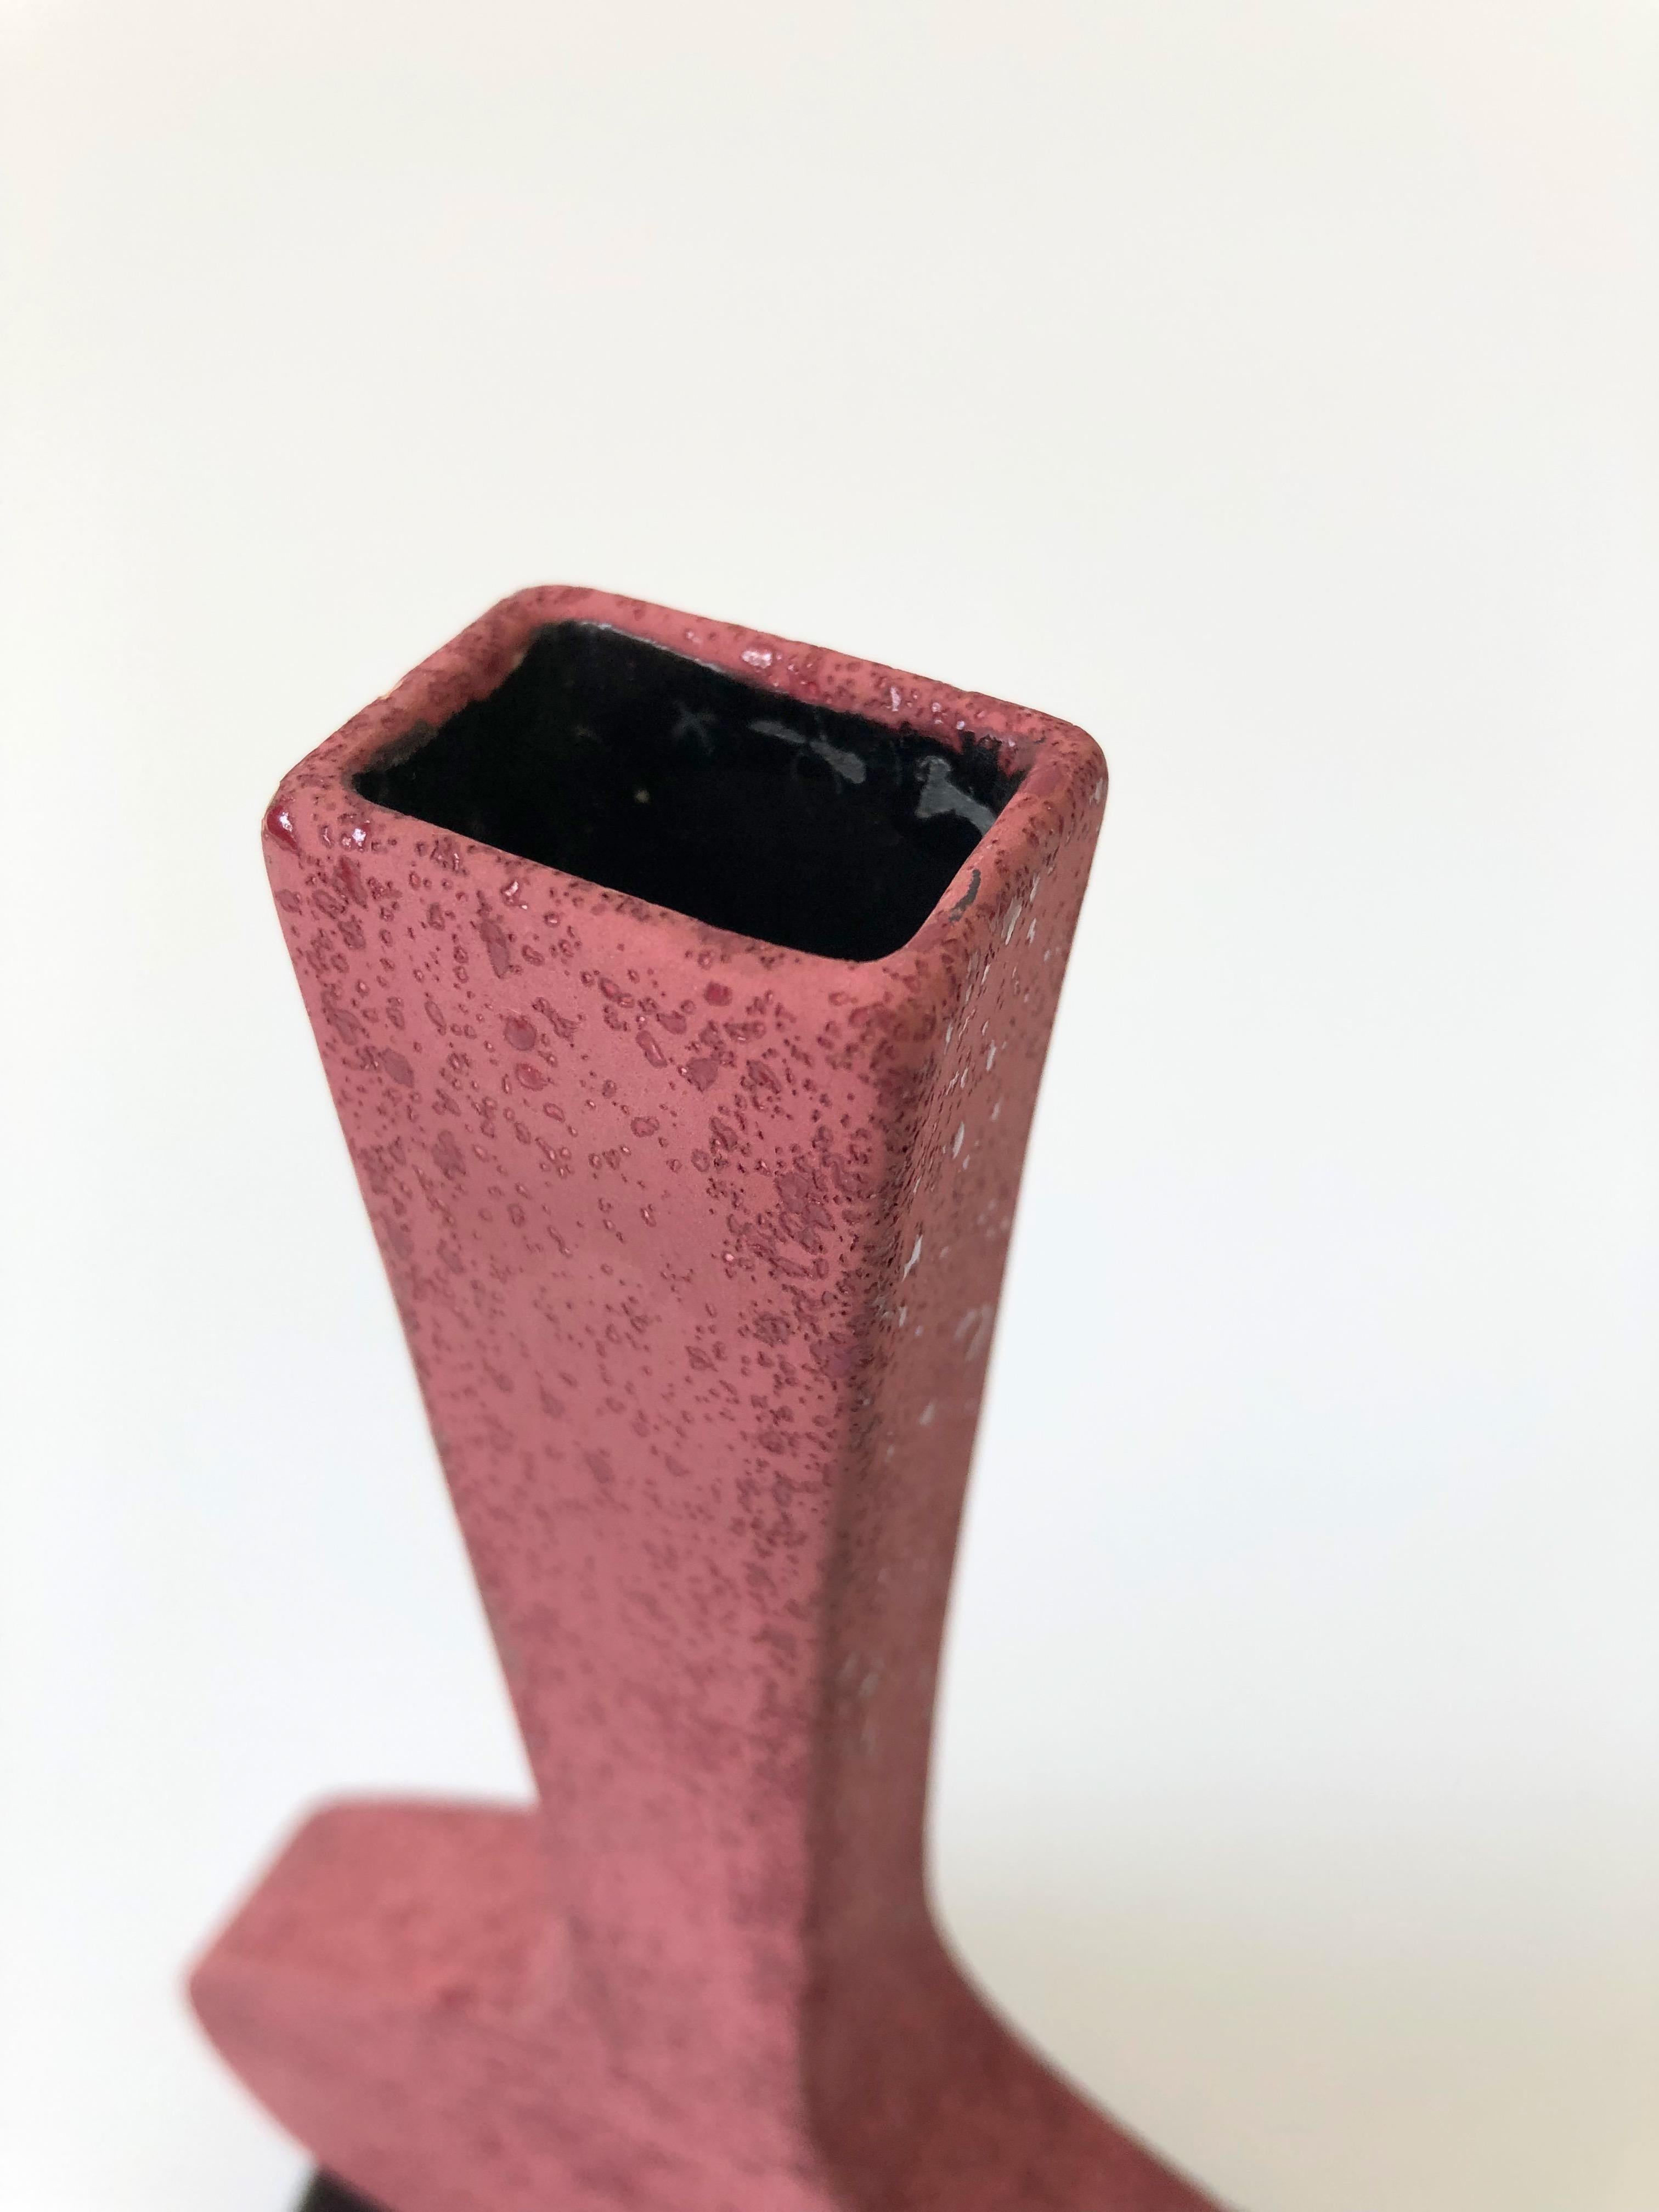 Post-Modern Vintage 1980s Pink Postmodern Vase